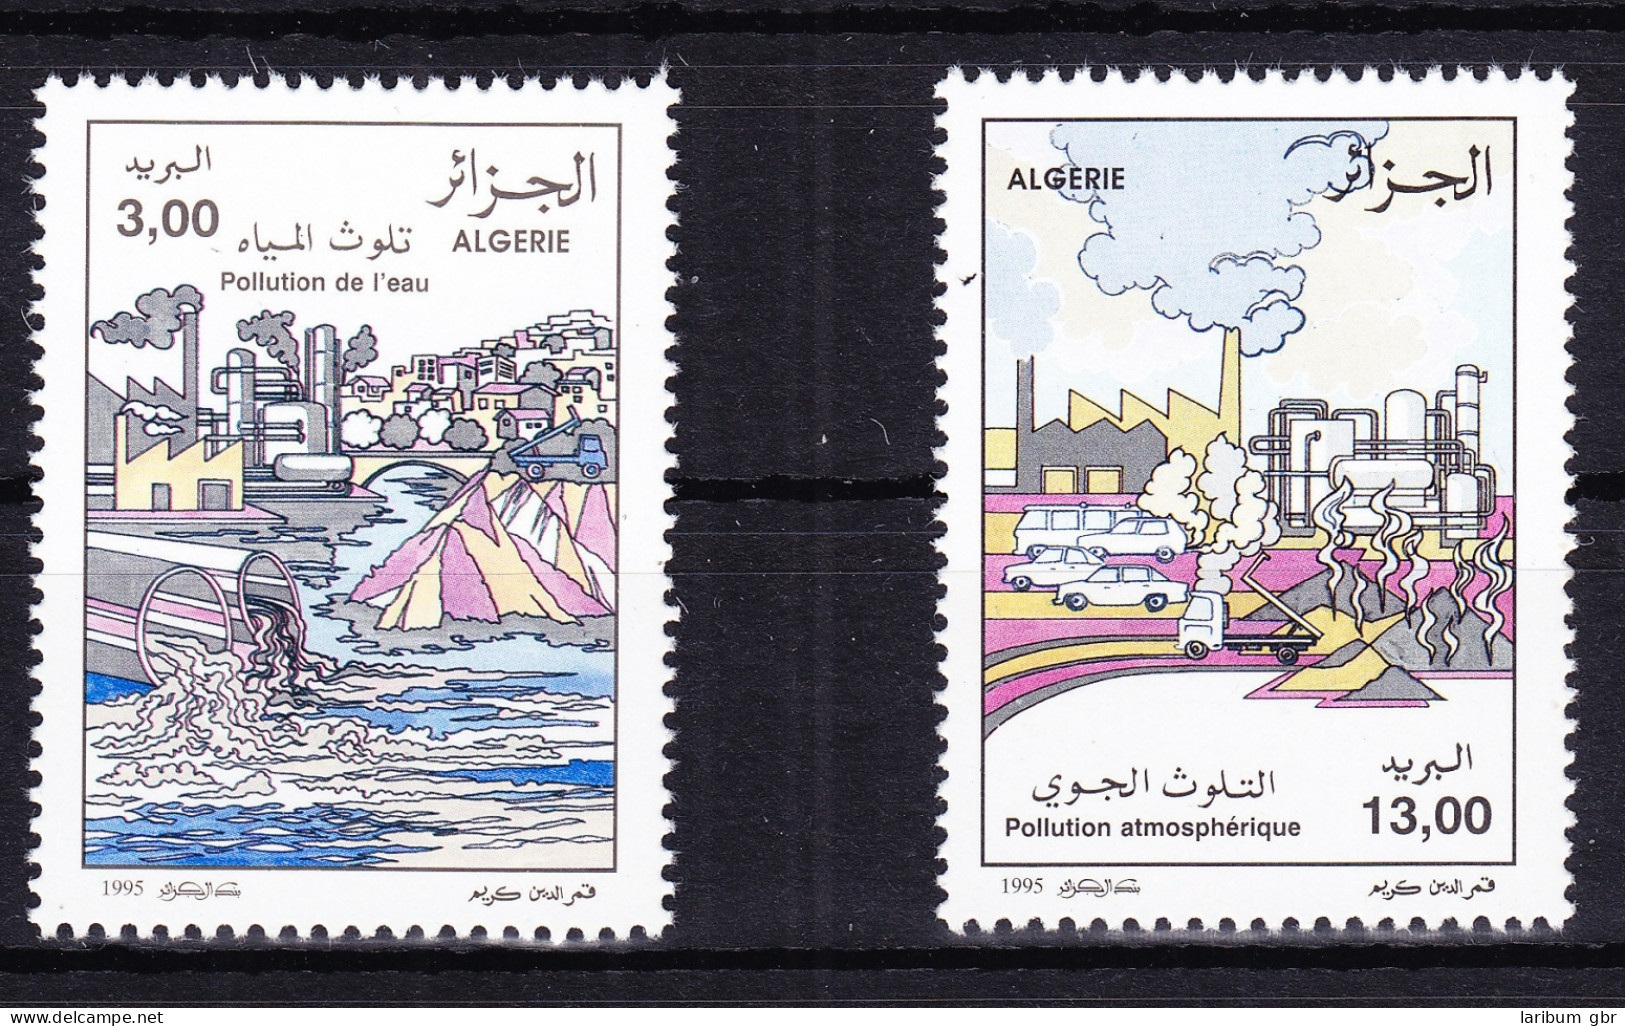 Algerien 1137-1138 Postfrisch Umweltschutz, MNH #RB799 - Algerije (1962-...)